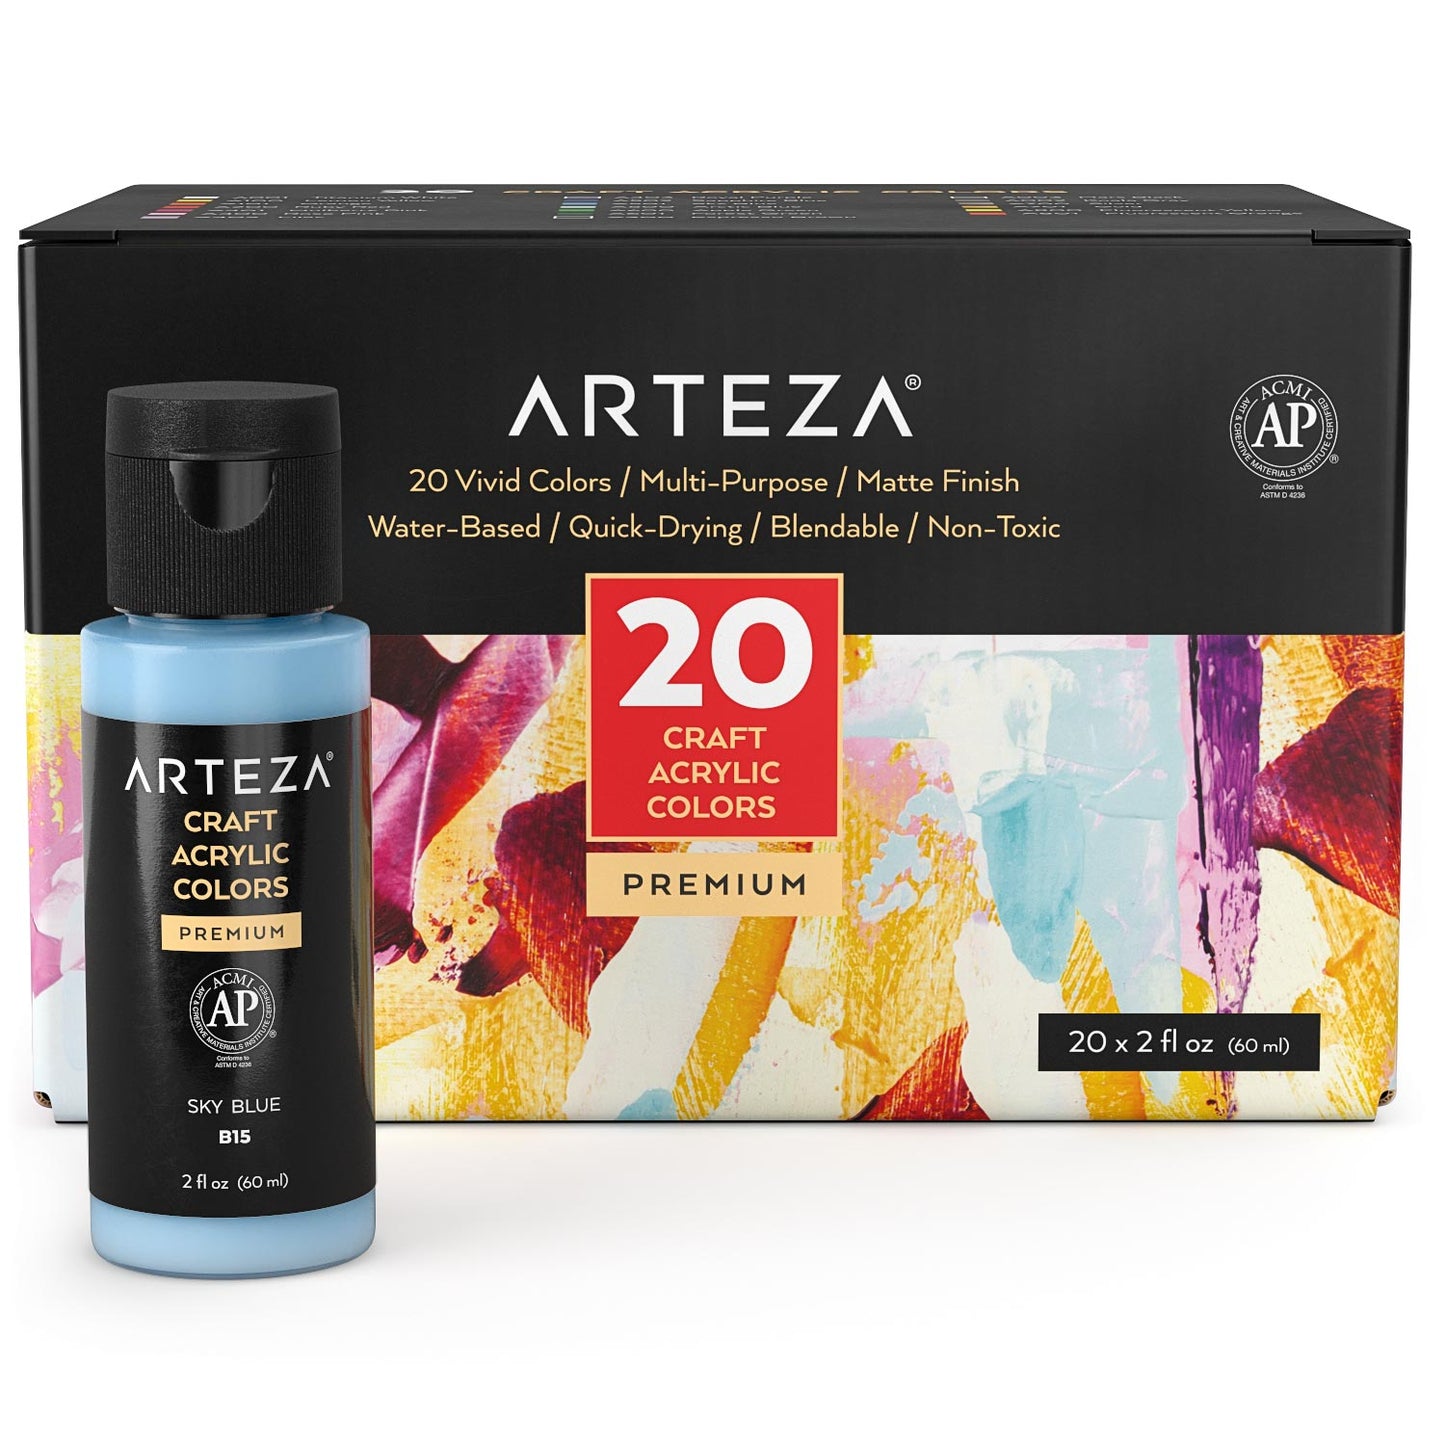 Arteza Craft Acrylic Paint, Pearlized, 2oz Bottles - Set of 14